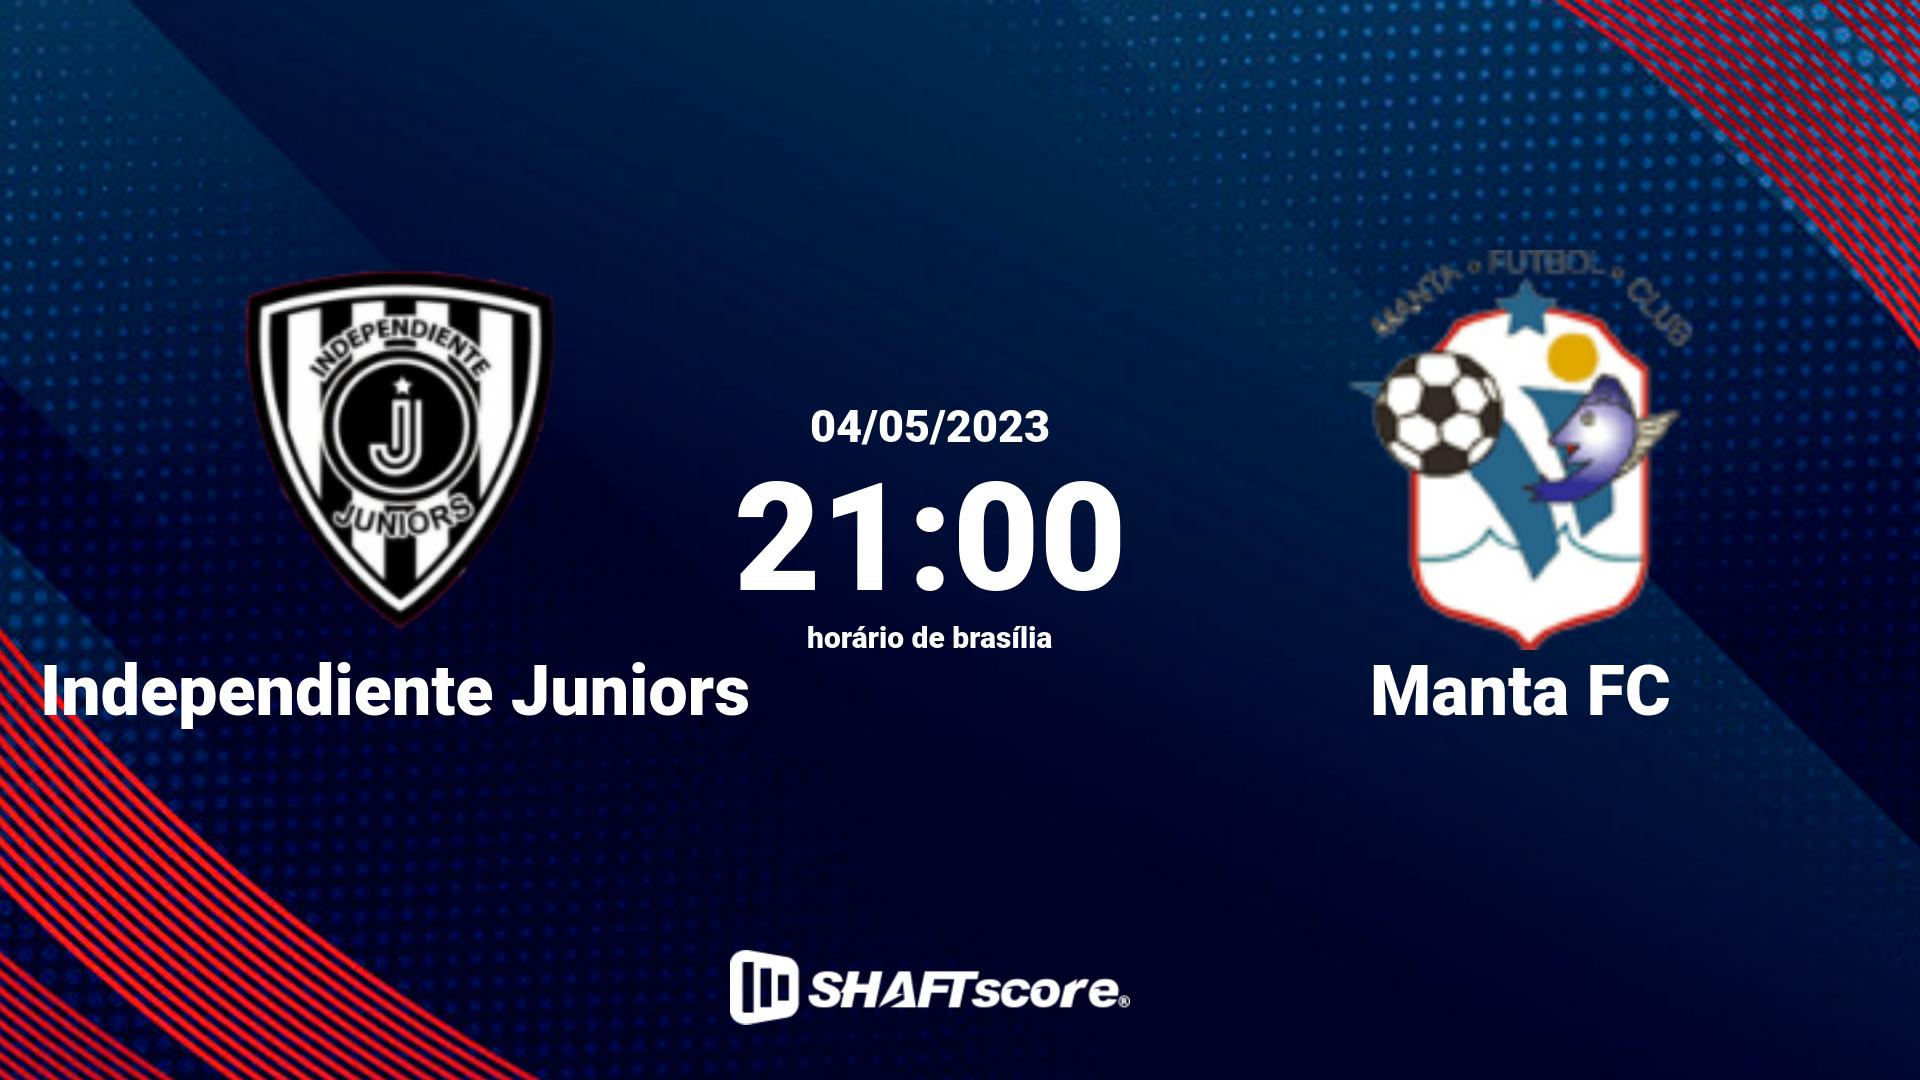 Estatísticas do jogo Independiente Juniors vs Manta FC 04.05 21:00